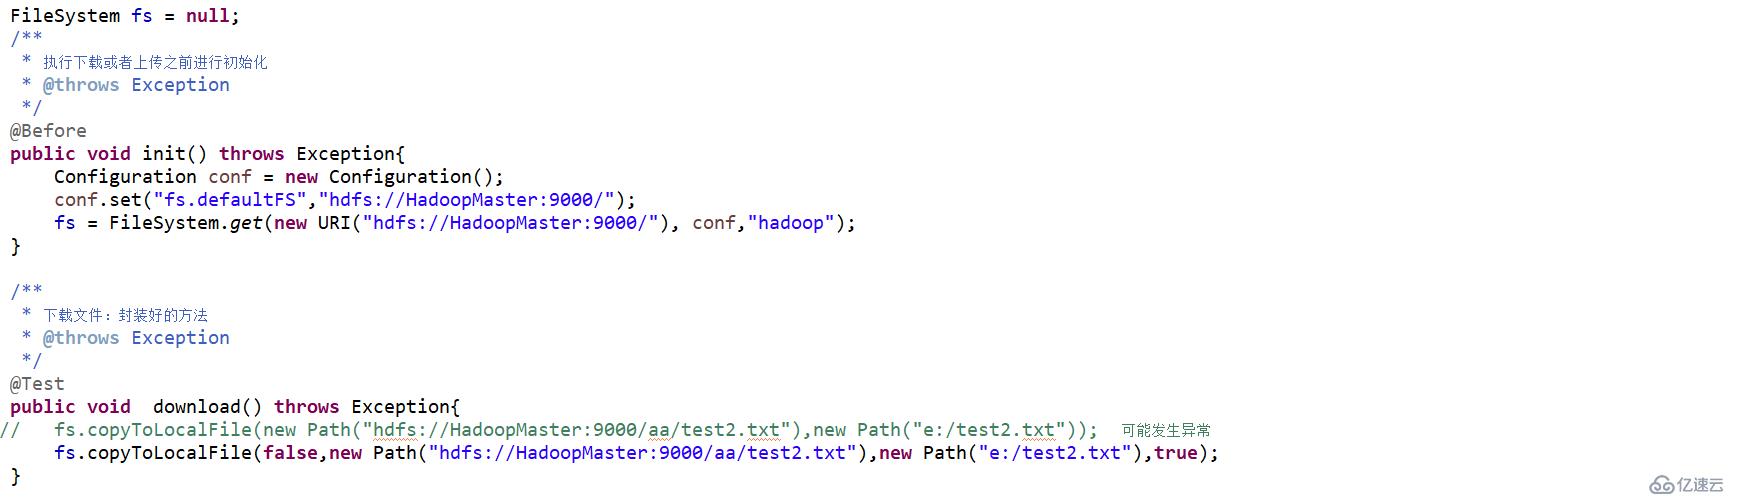 Hadoop使用方法copyToLocalFile报异常